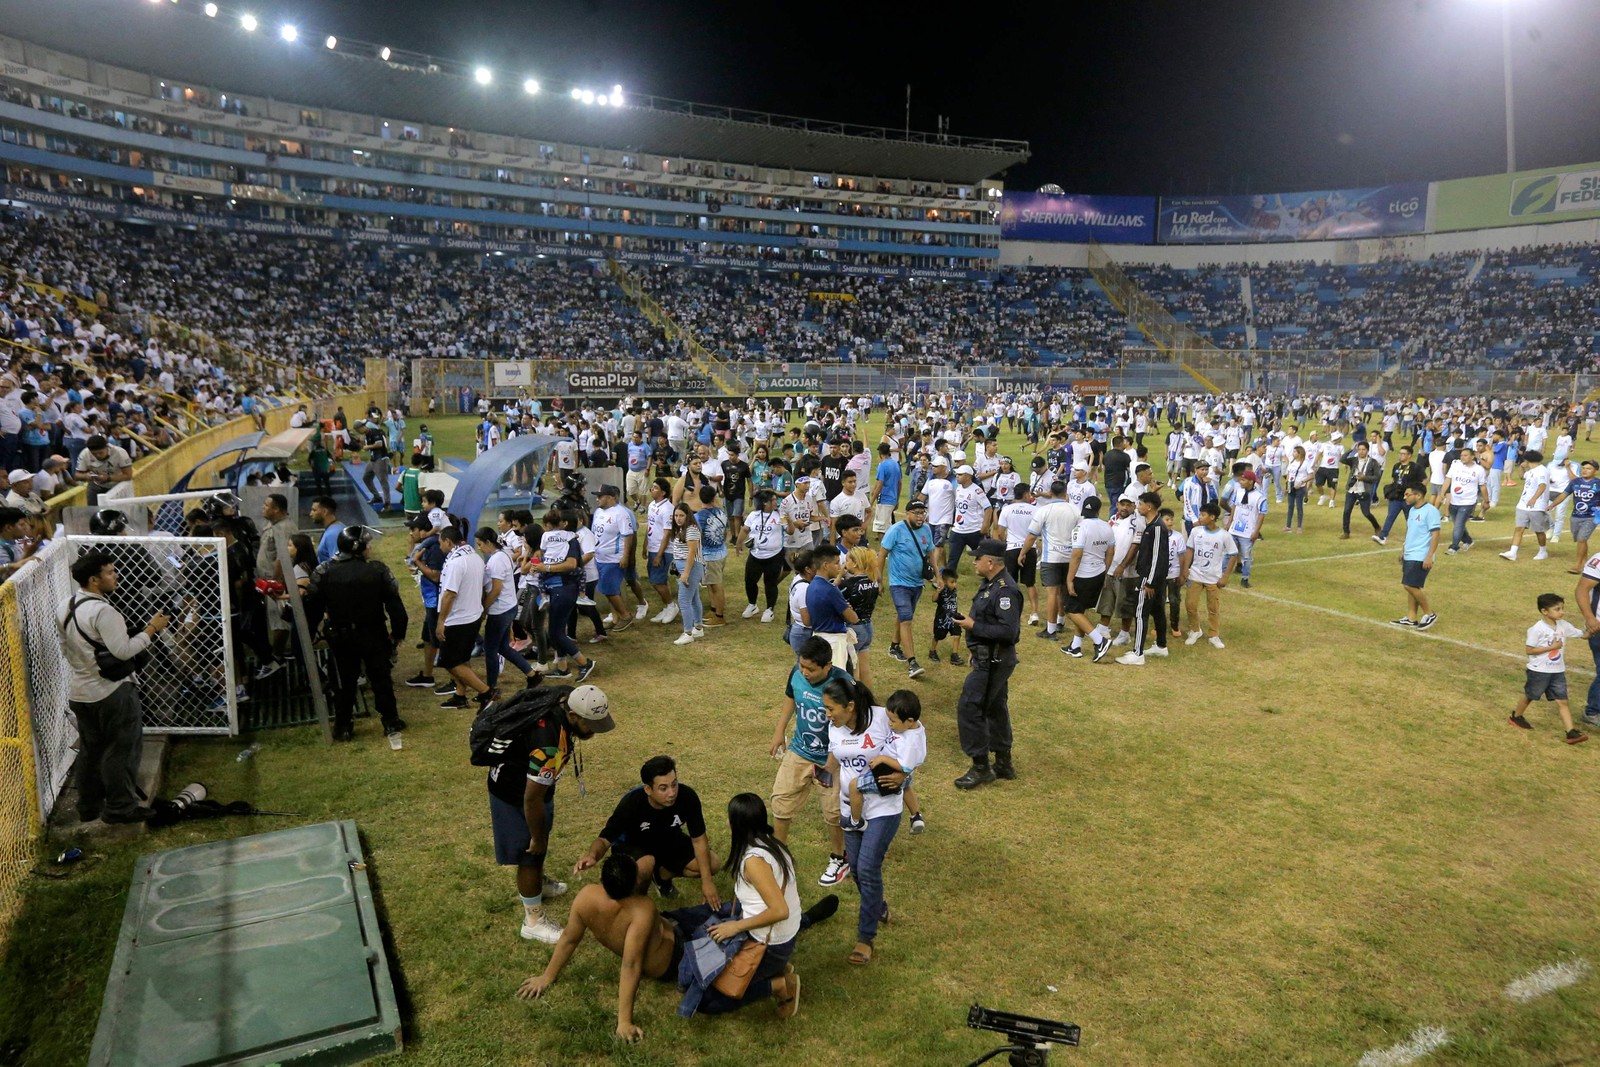 Doze pessoas foram mortas neste sábado em um tumulto em um estádio de El Salvador — Foto: Milton Flores / AFP